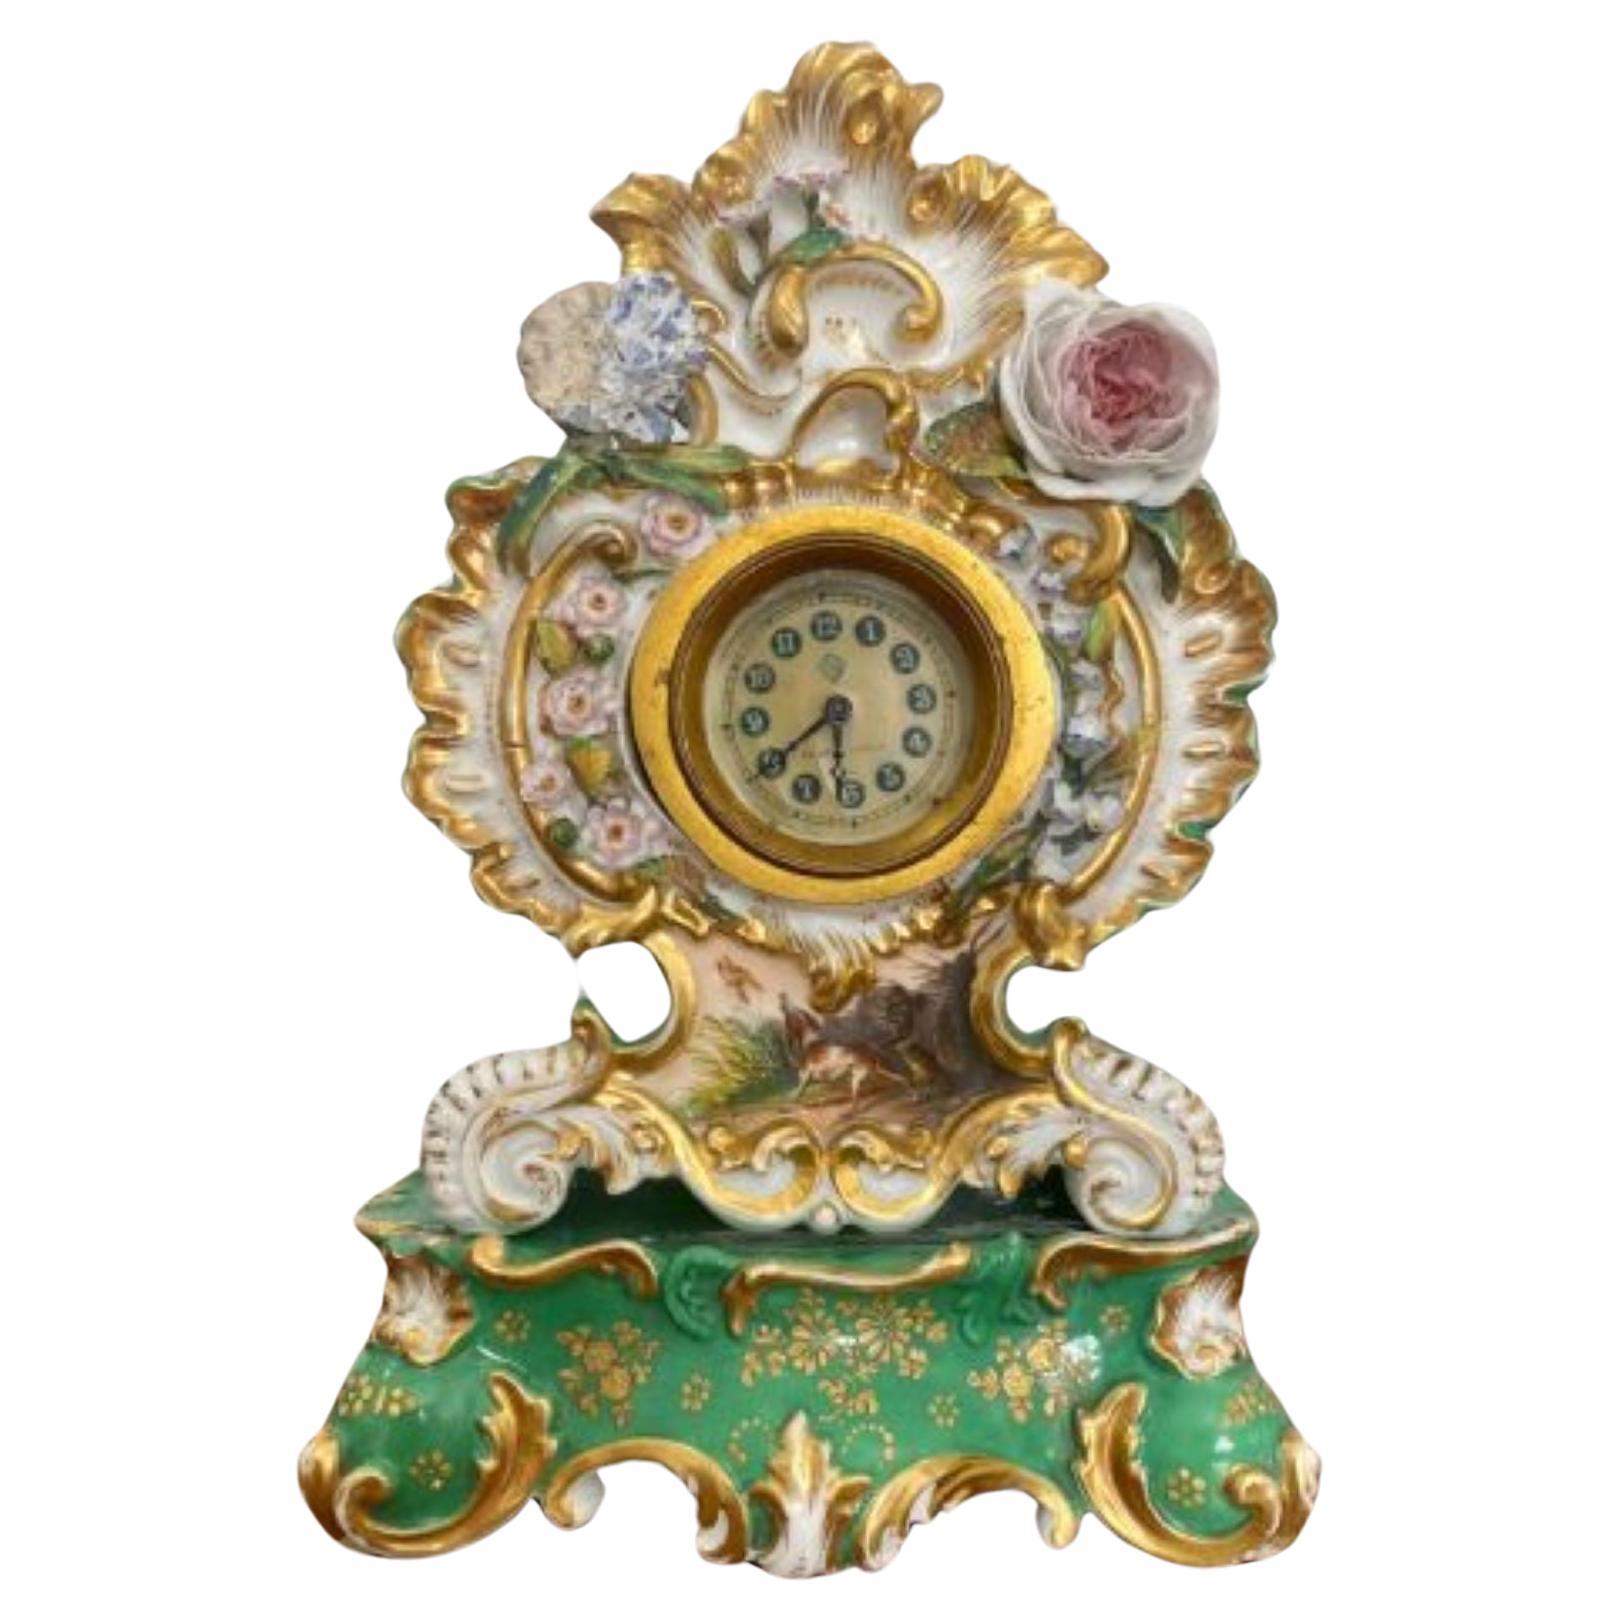 Ancienne horloge de manteau en porcelaine peinte à la main de qualité édouardienne